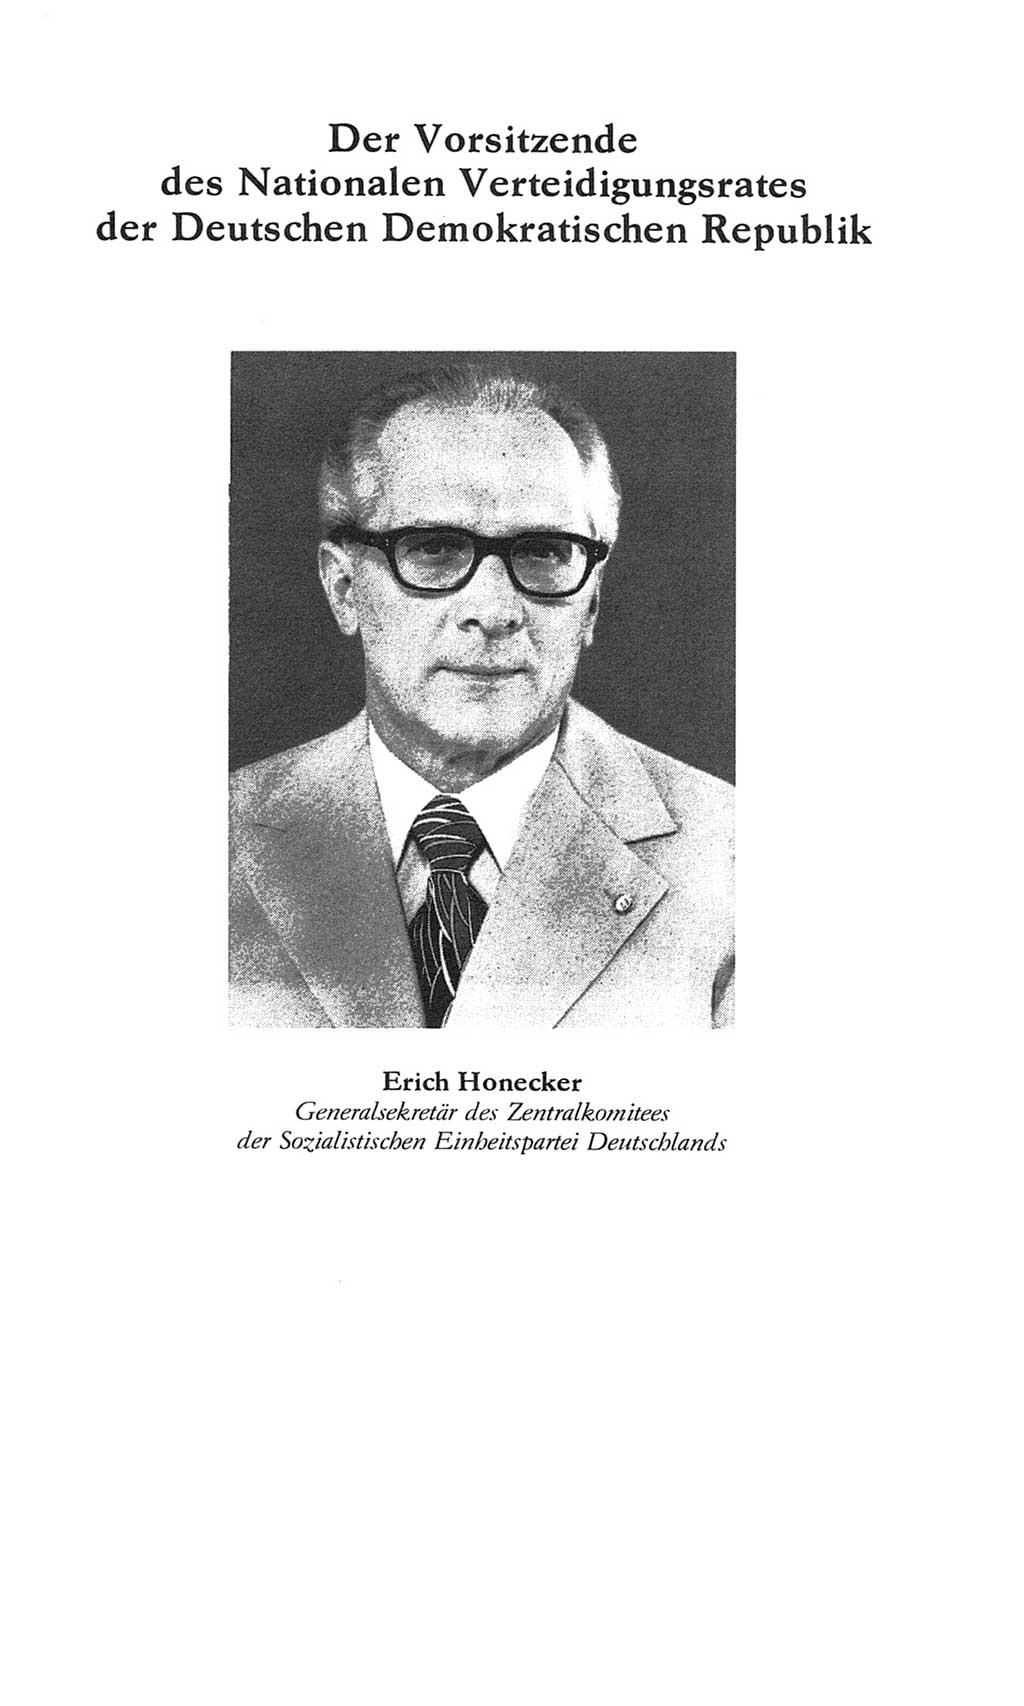 Volkskammer (VK) der Deutschen Demokratischen Republik (DDR), 8. Wahlperiode 1981-1986, Seite 121 (VK. DDR 8. WP. 1981-1986, S. 121)